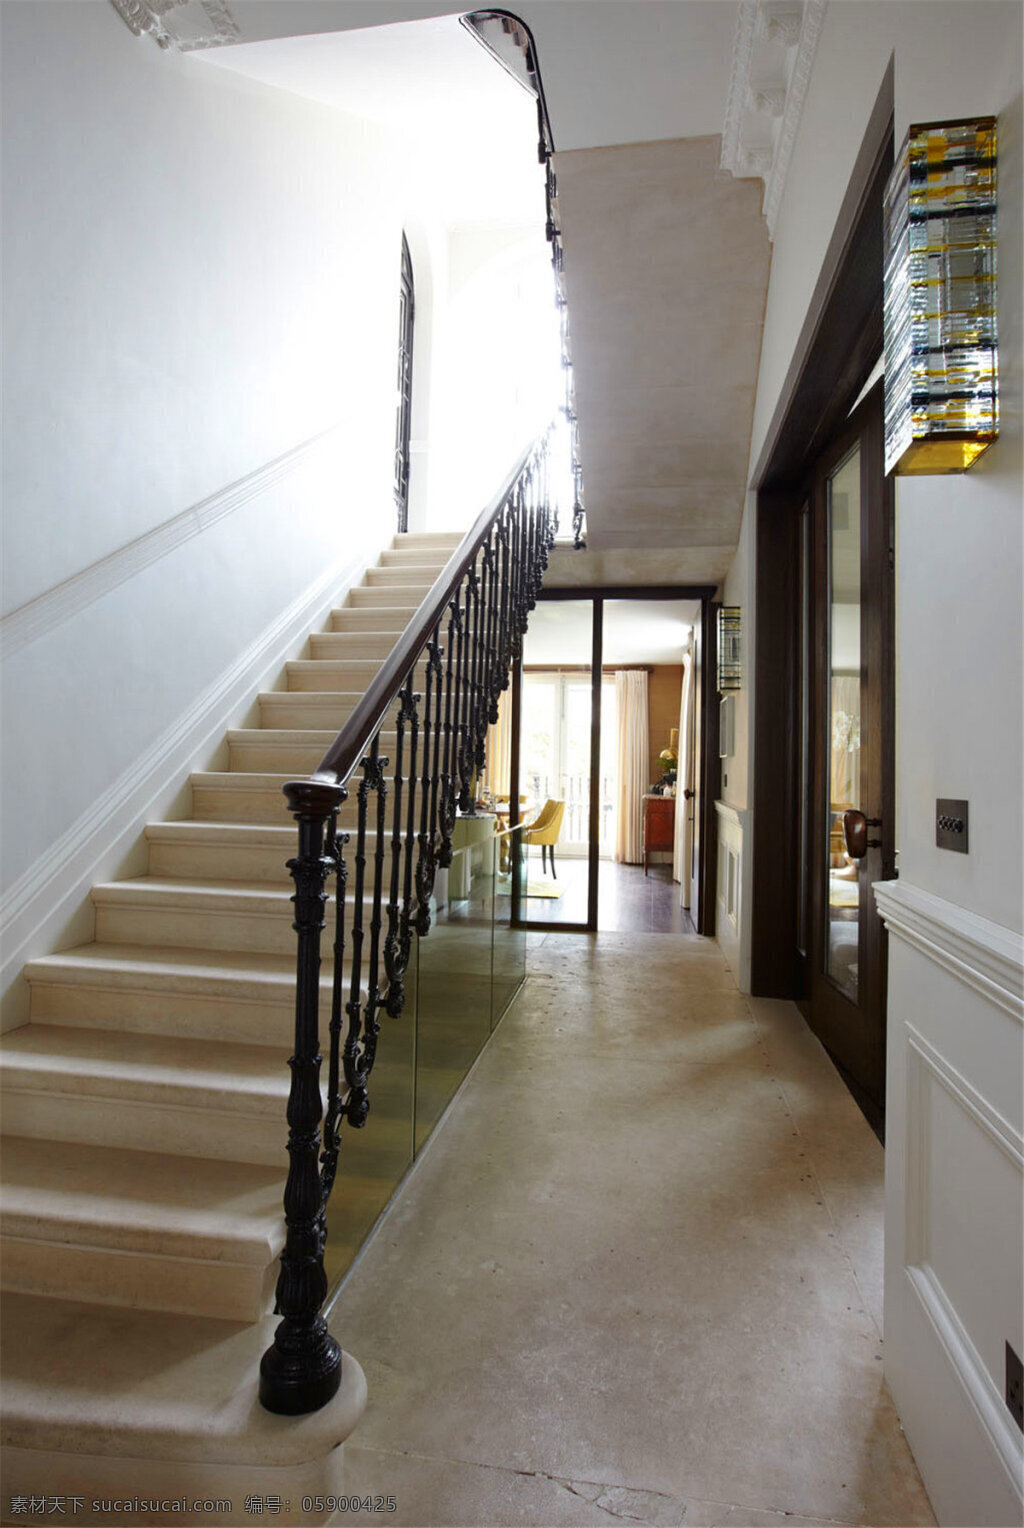 简约 楼梯间 入户 壁灯 装修 效果图 白色墙壁 过道 灰色地板砖 走廊